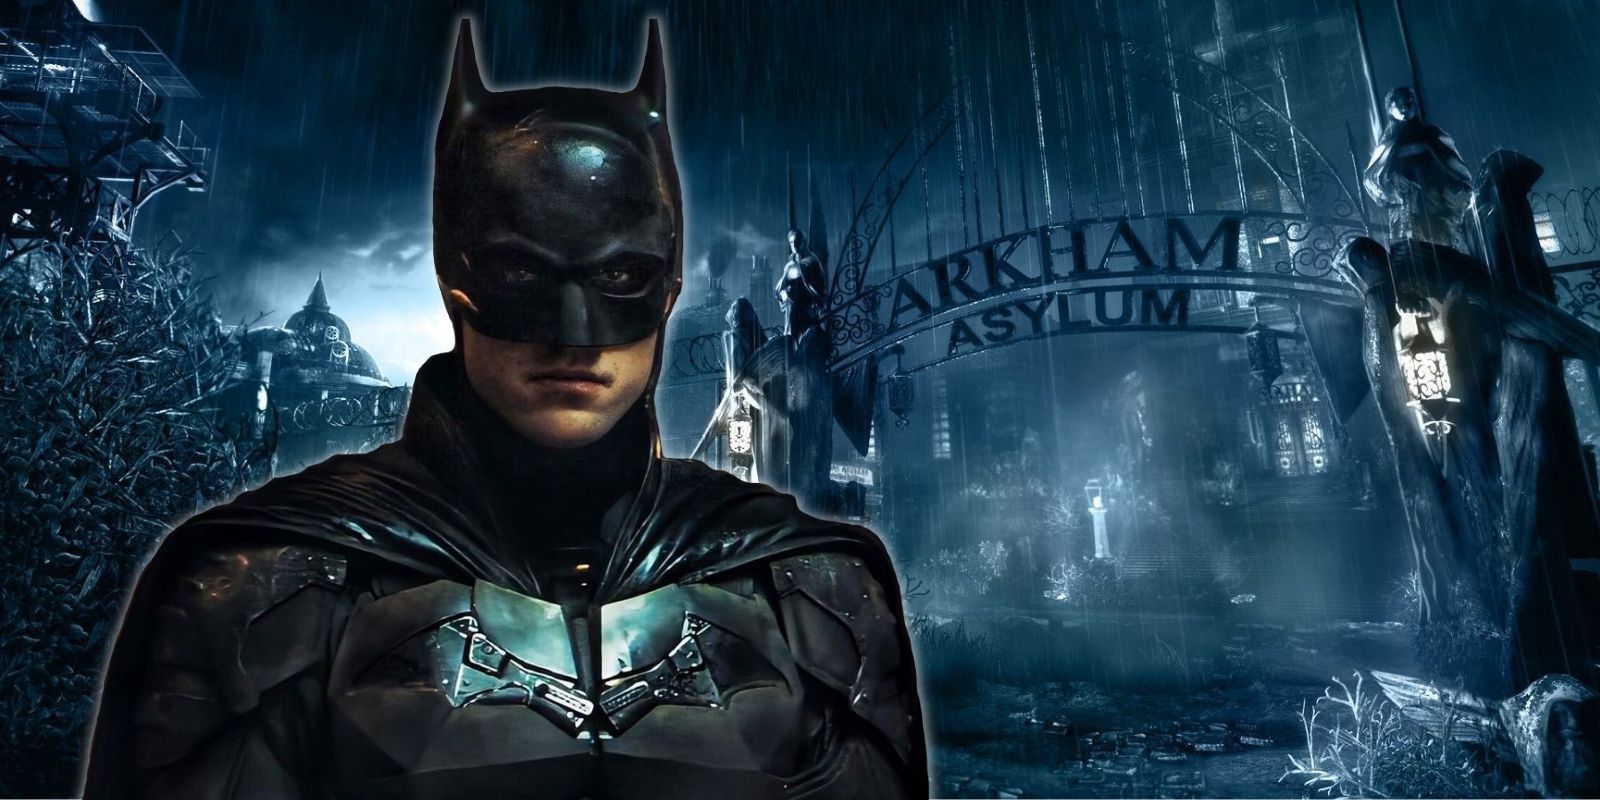 Robert Pattinson's Batman alongside Arkham Asylum